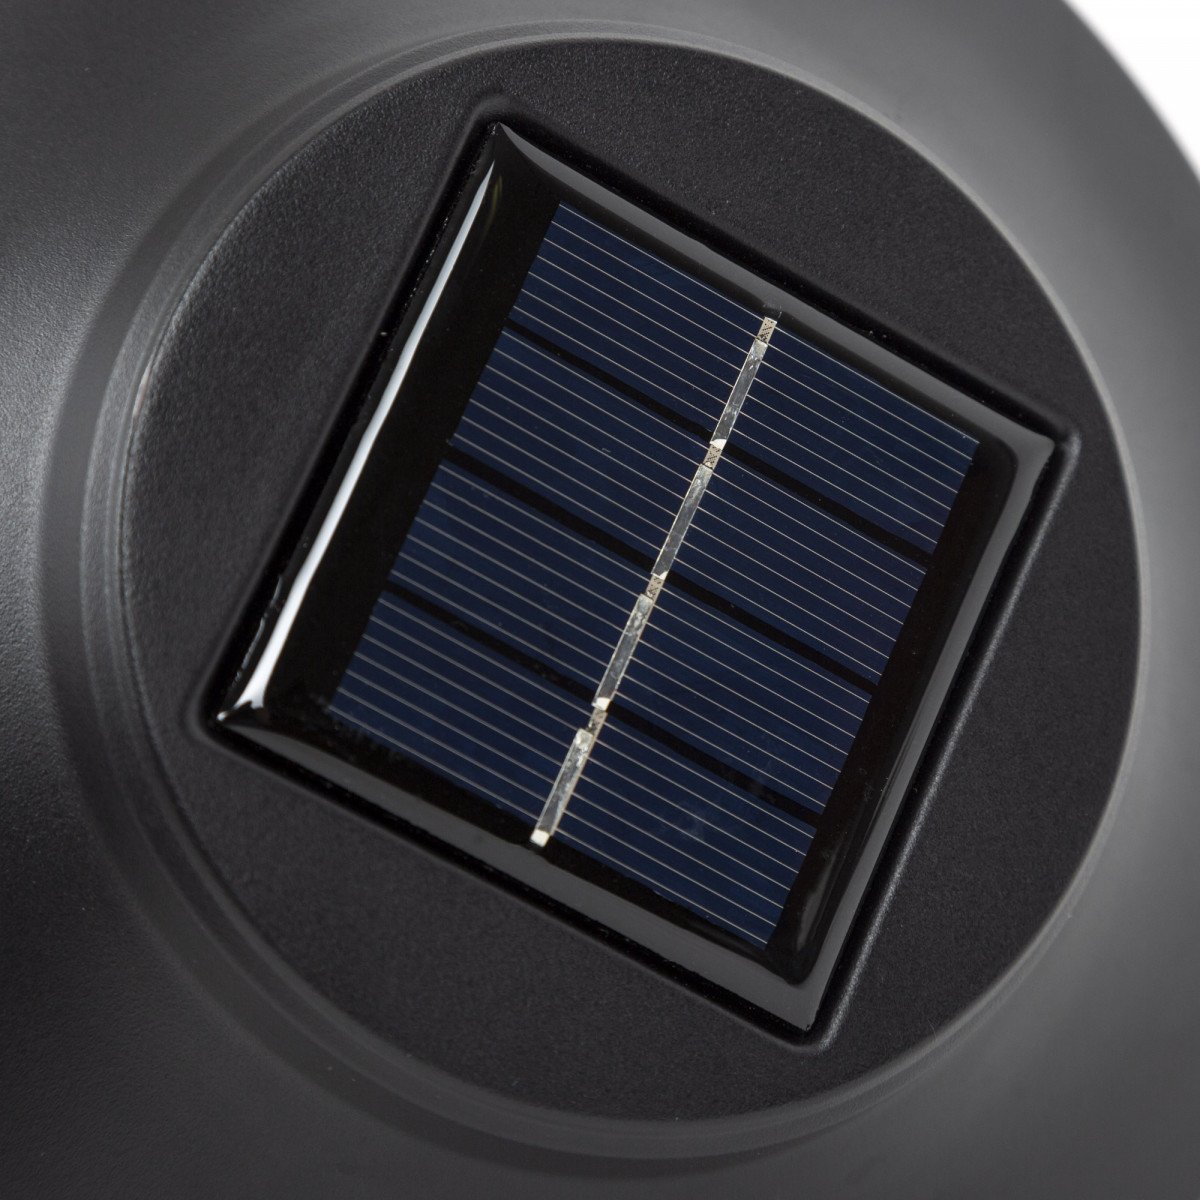 LED solar fakkel met prikpen, buitenverlichting zonder bedrading, werkt op zonlicht, fakkel op zonne-energie, kleur zwart, merk KS Verlichting, duurzame tuinverlichting